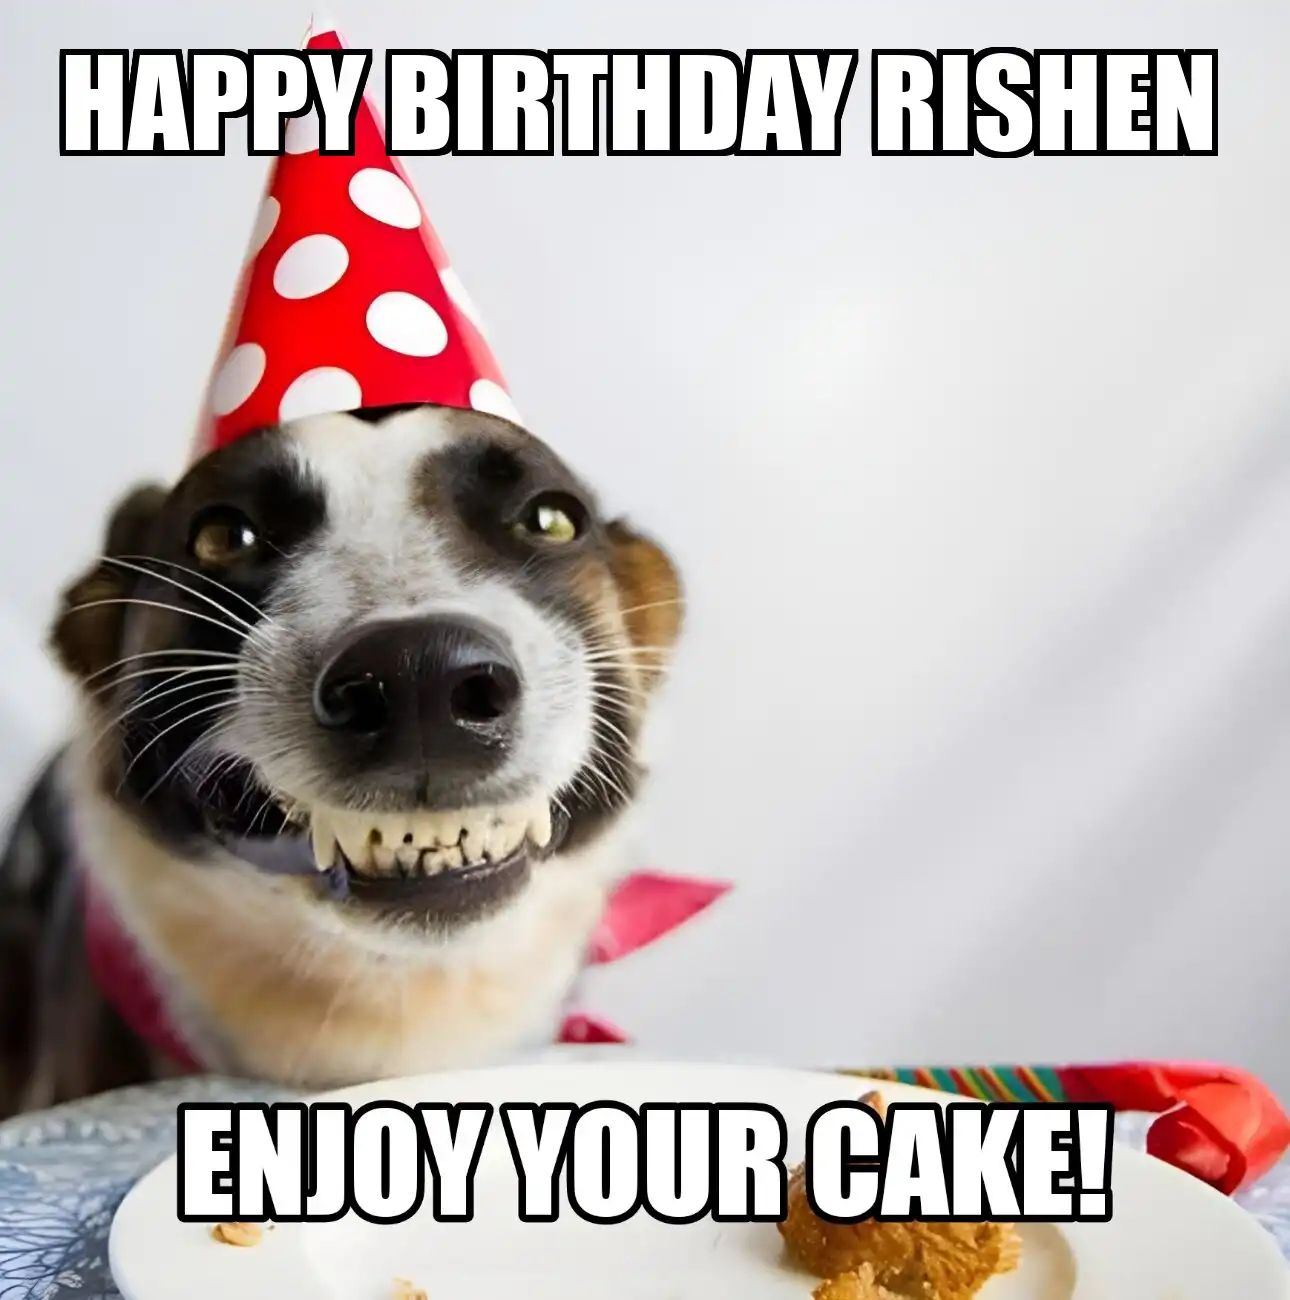 Happy Birthday Rishen Enjoy Your Cake Dog Meme